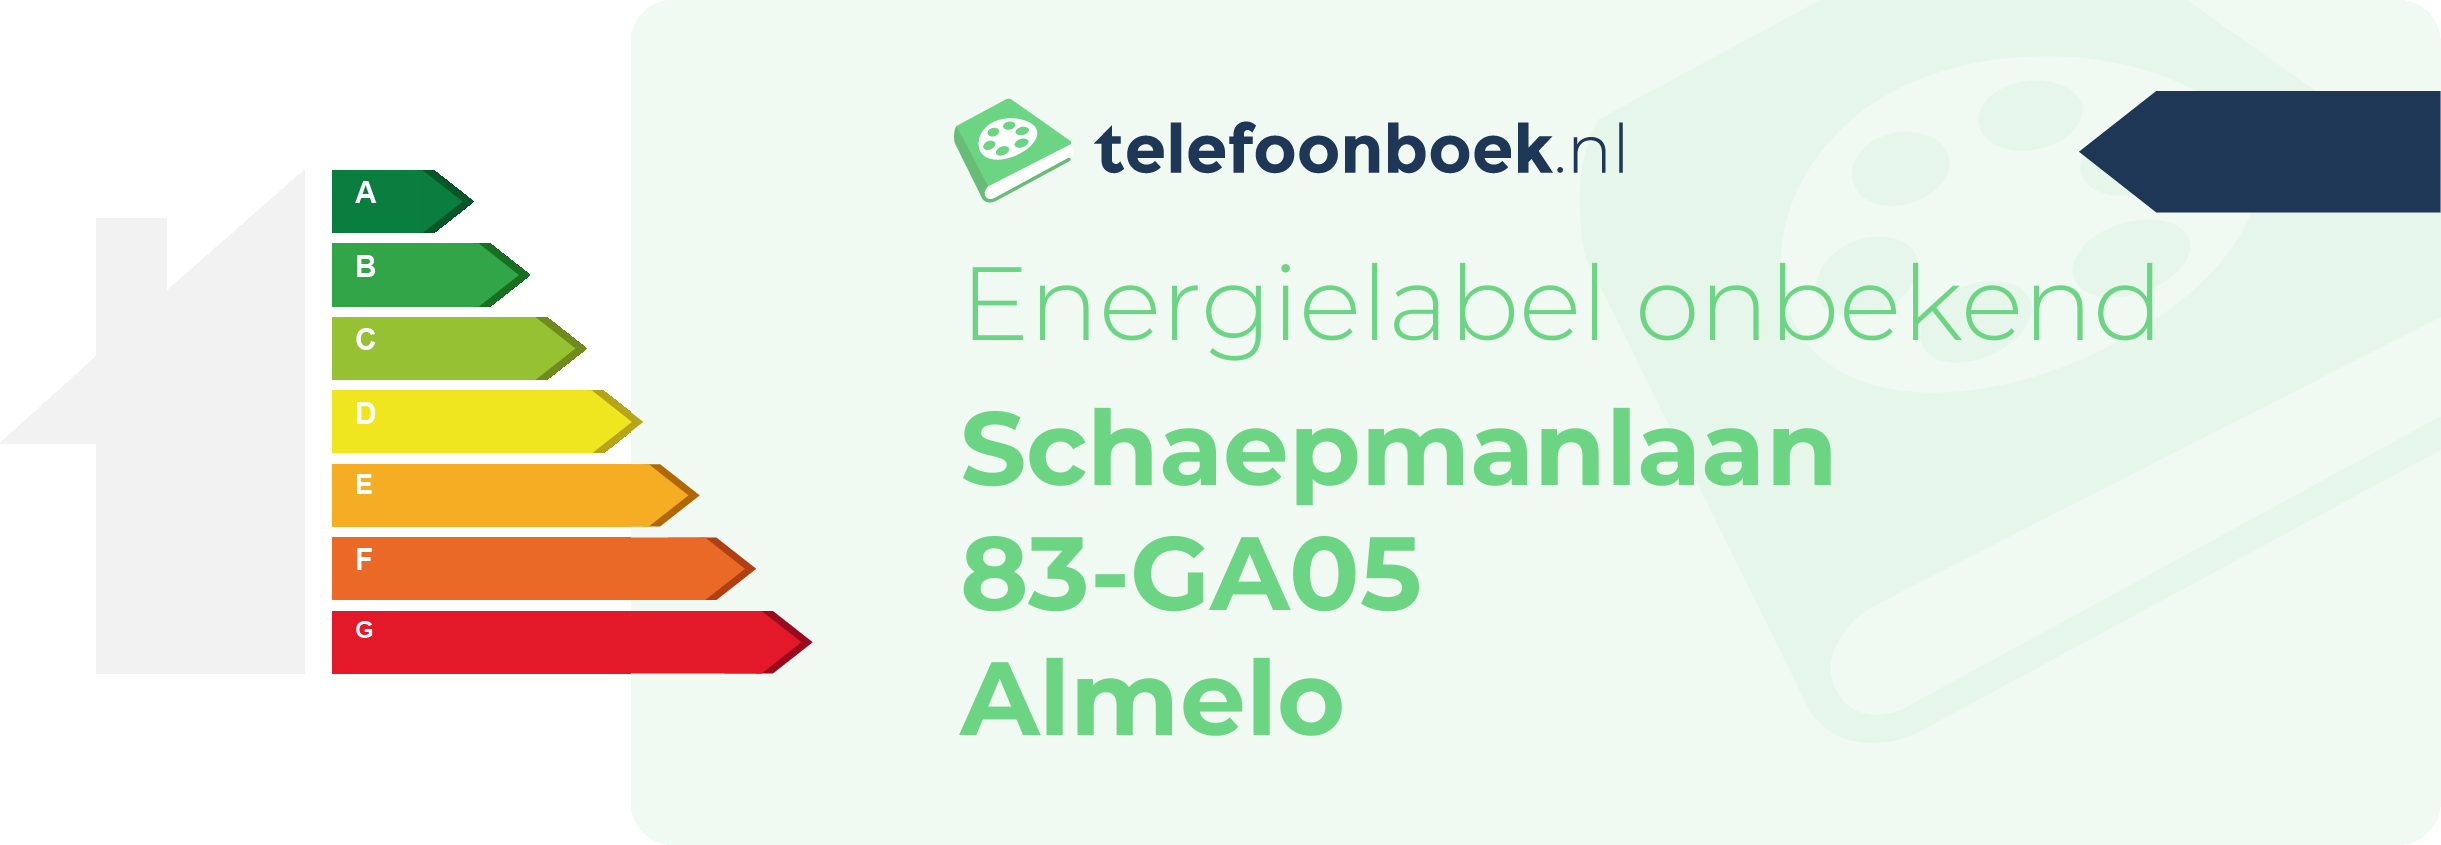 Energielabel Schaepmanlaan 83-GA05 Almelo